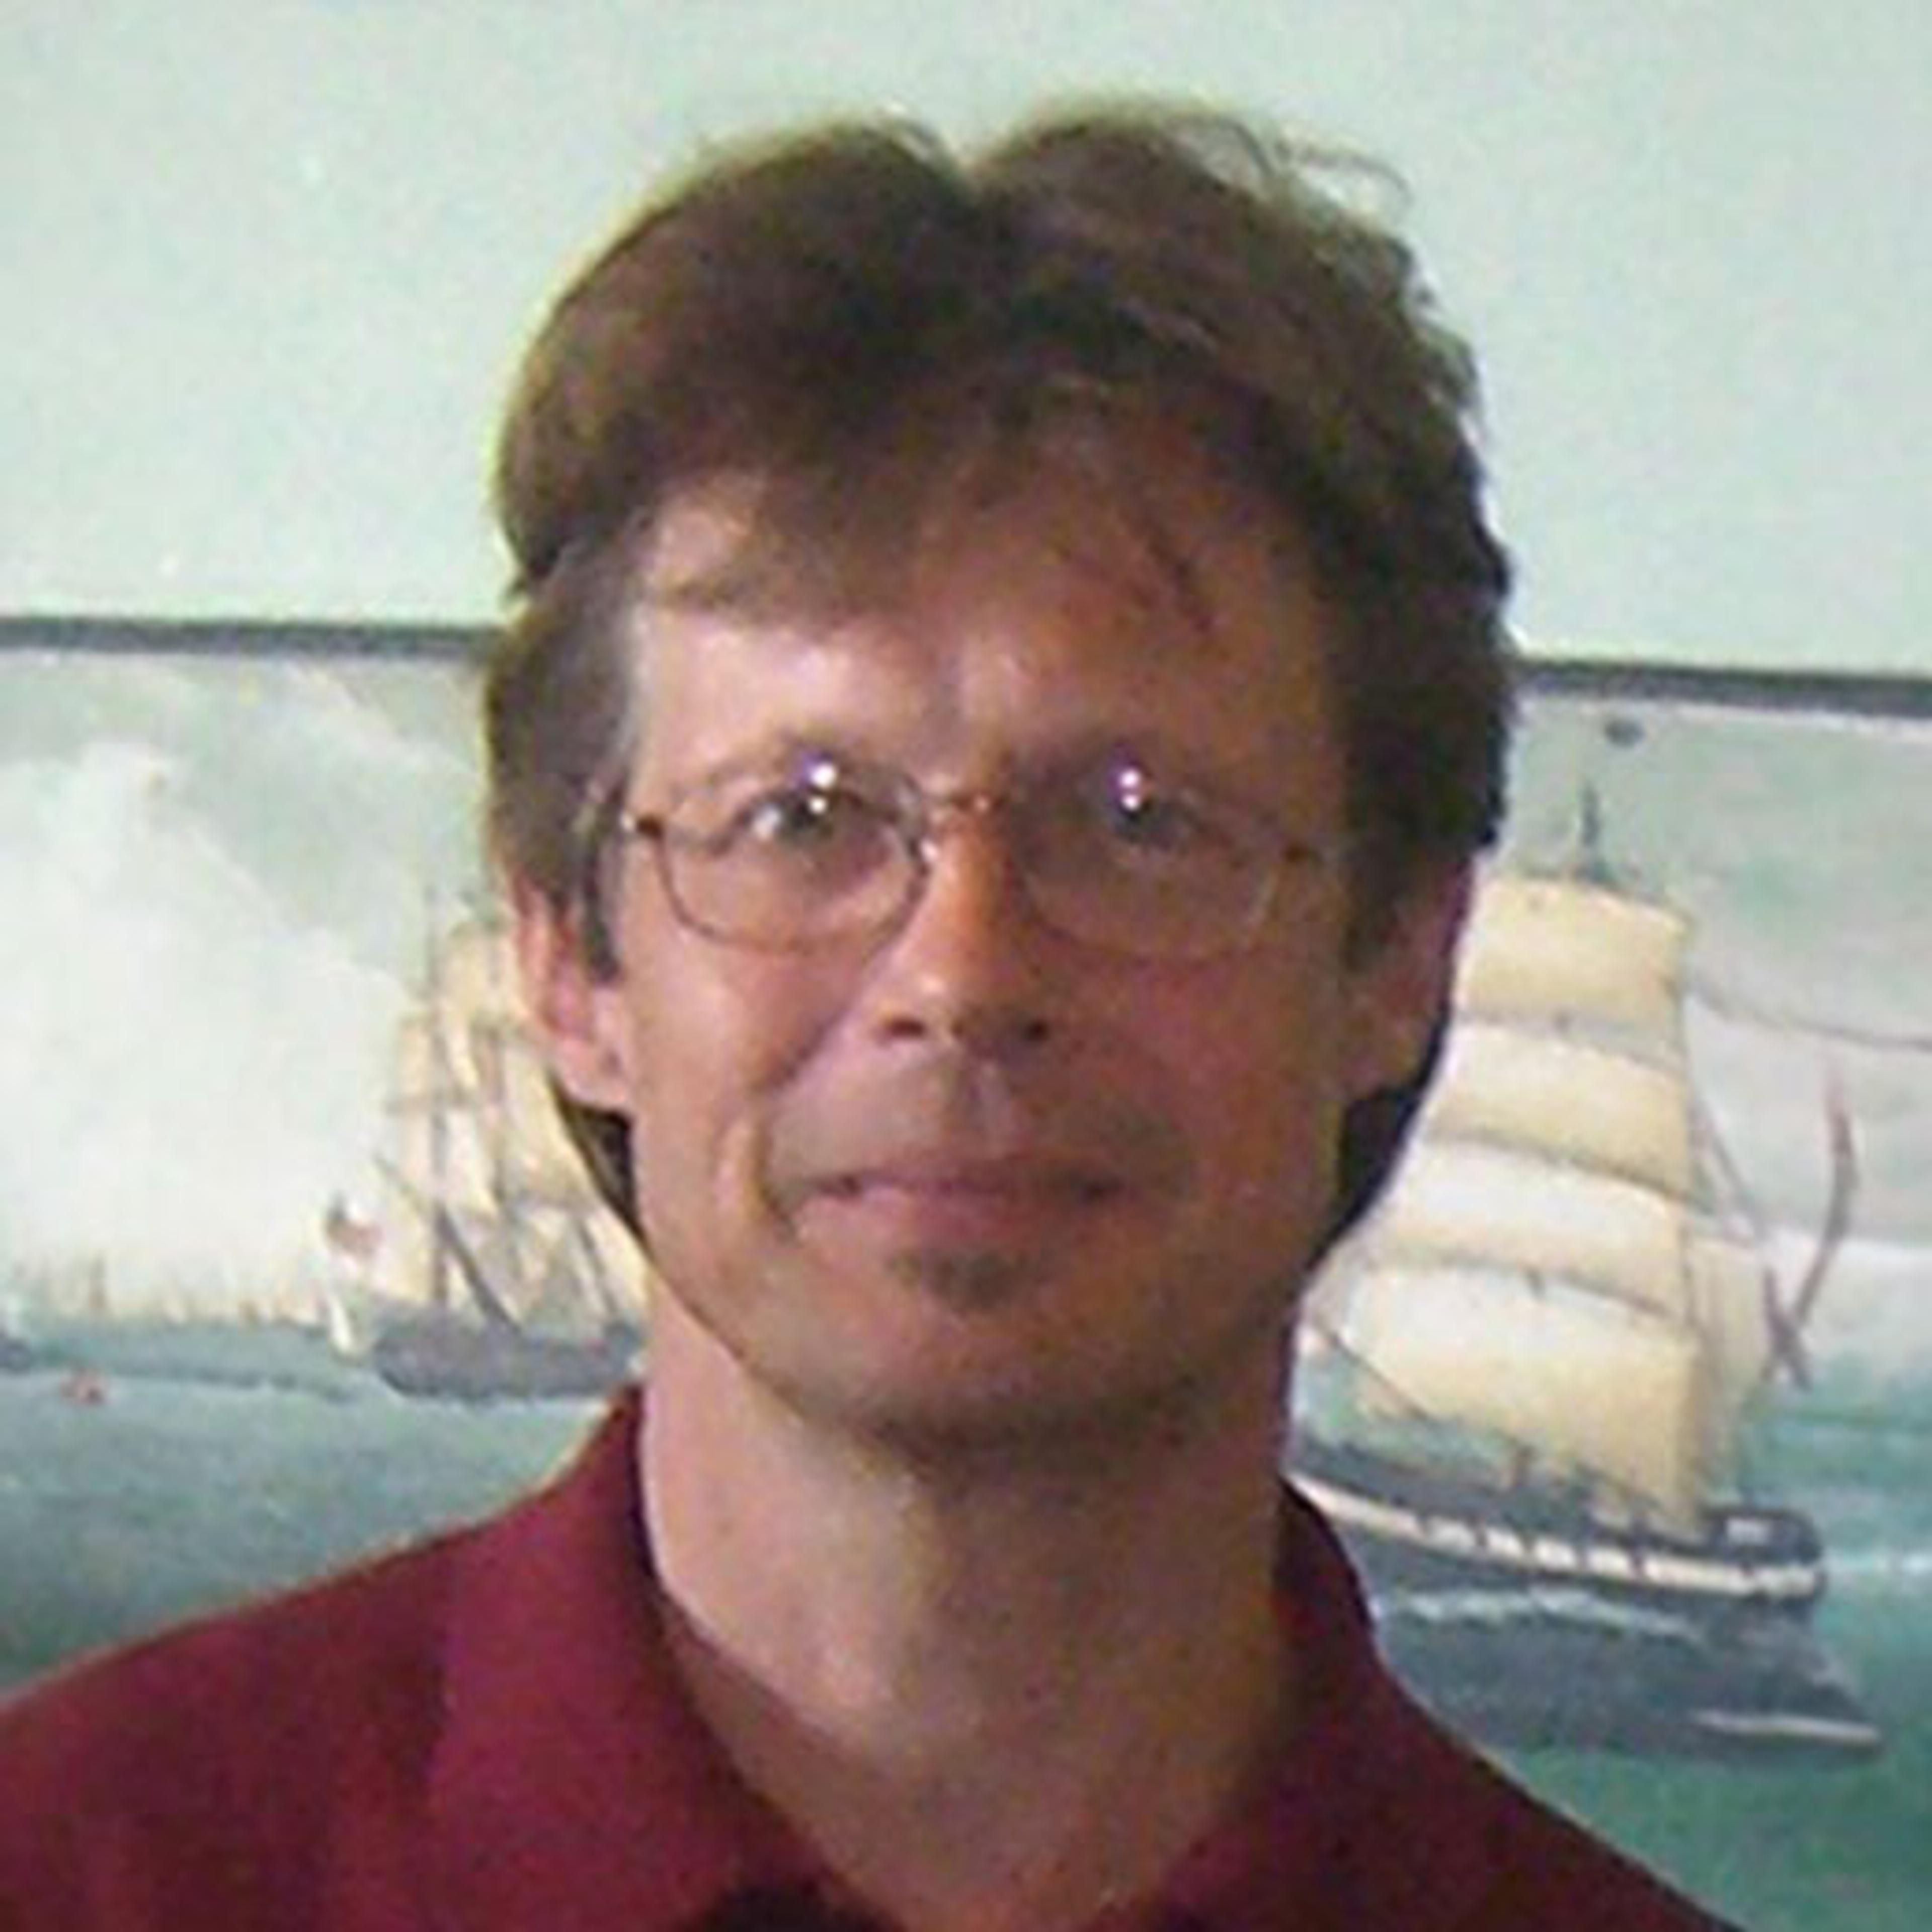 Mark Nowakowski